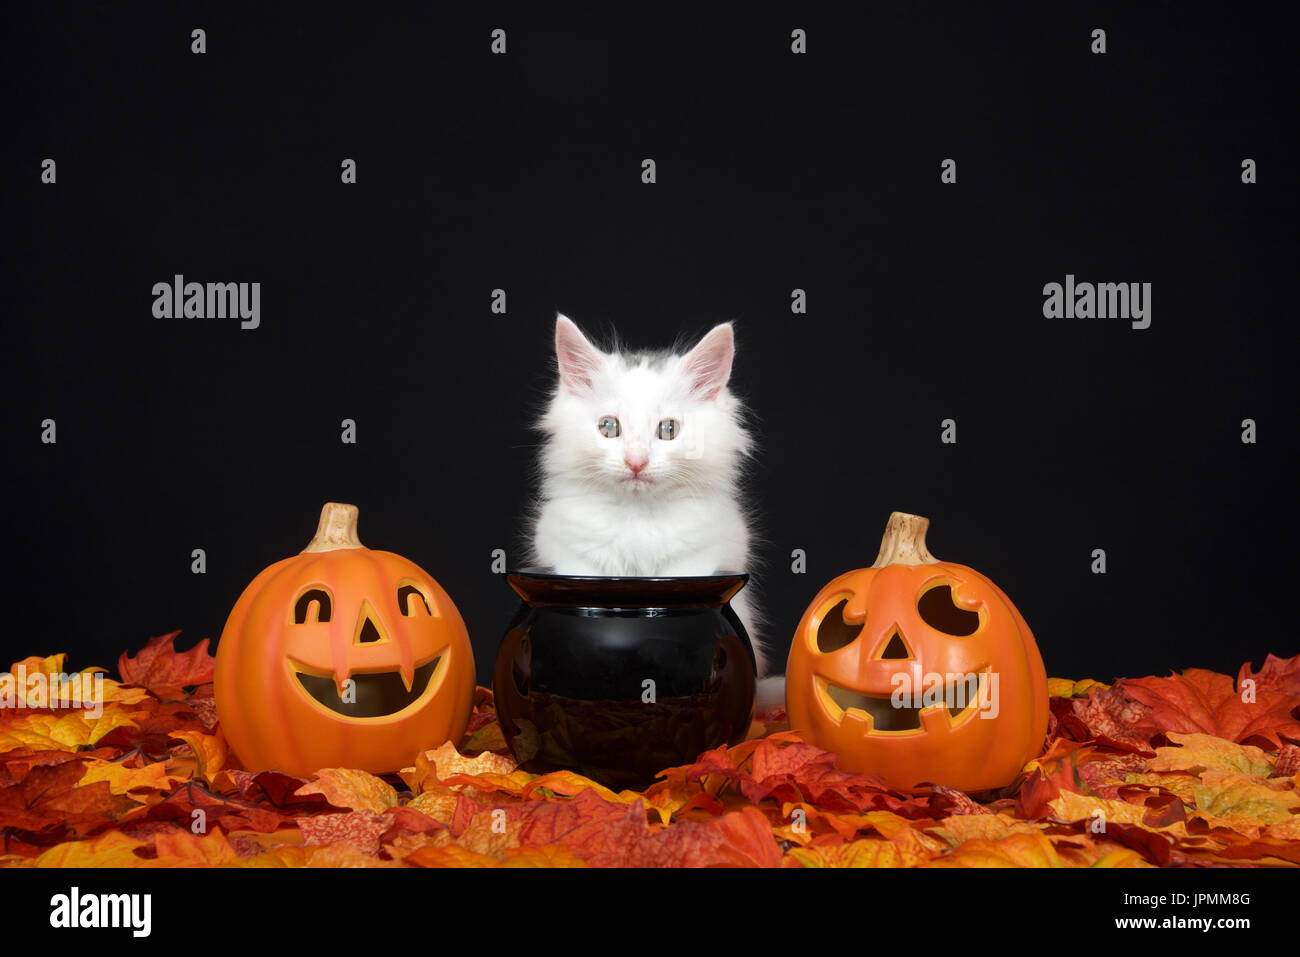 Un chaton blanc moelleux assis derrière un chaudron noir avec jack o lanterne sur deux côtés entouré de feuilles d'automne l'automne, fond noir. Banque D'Images